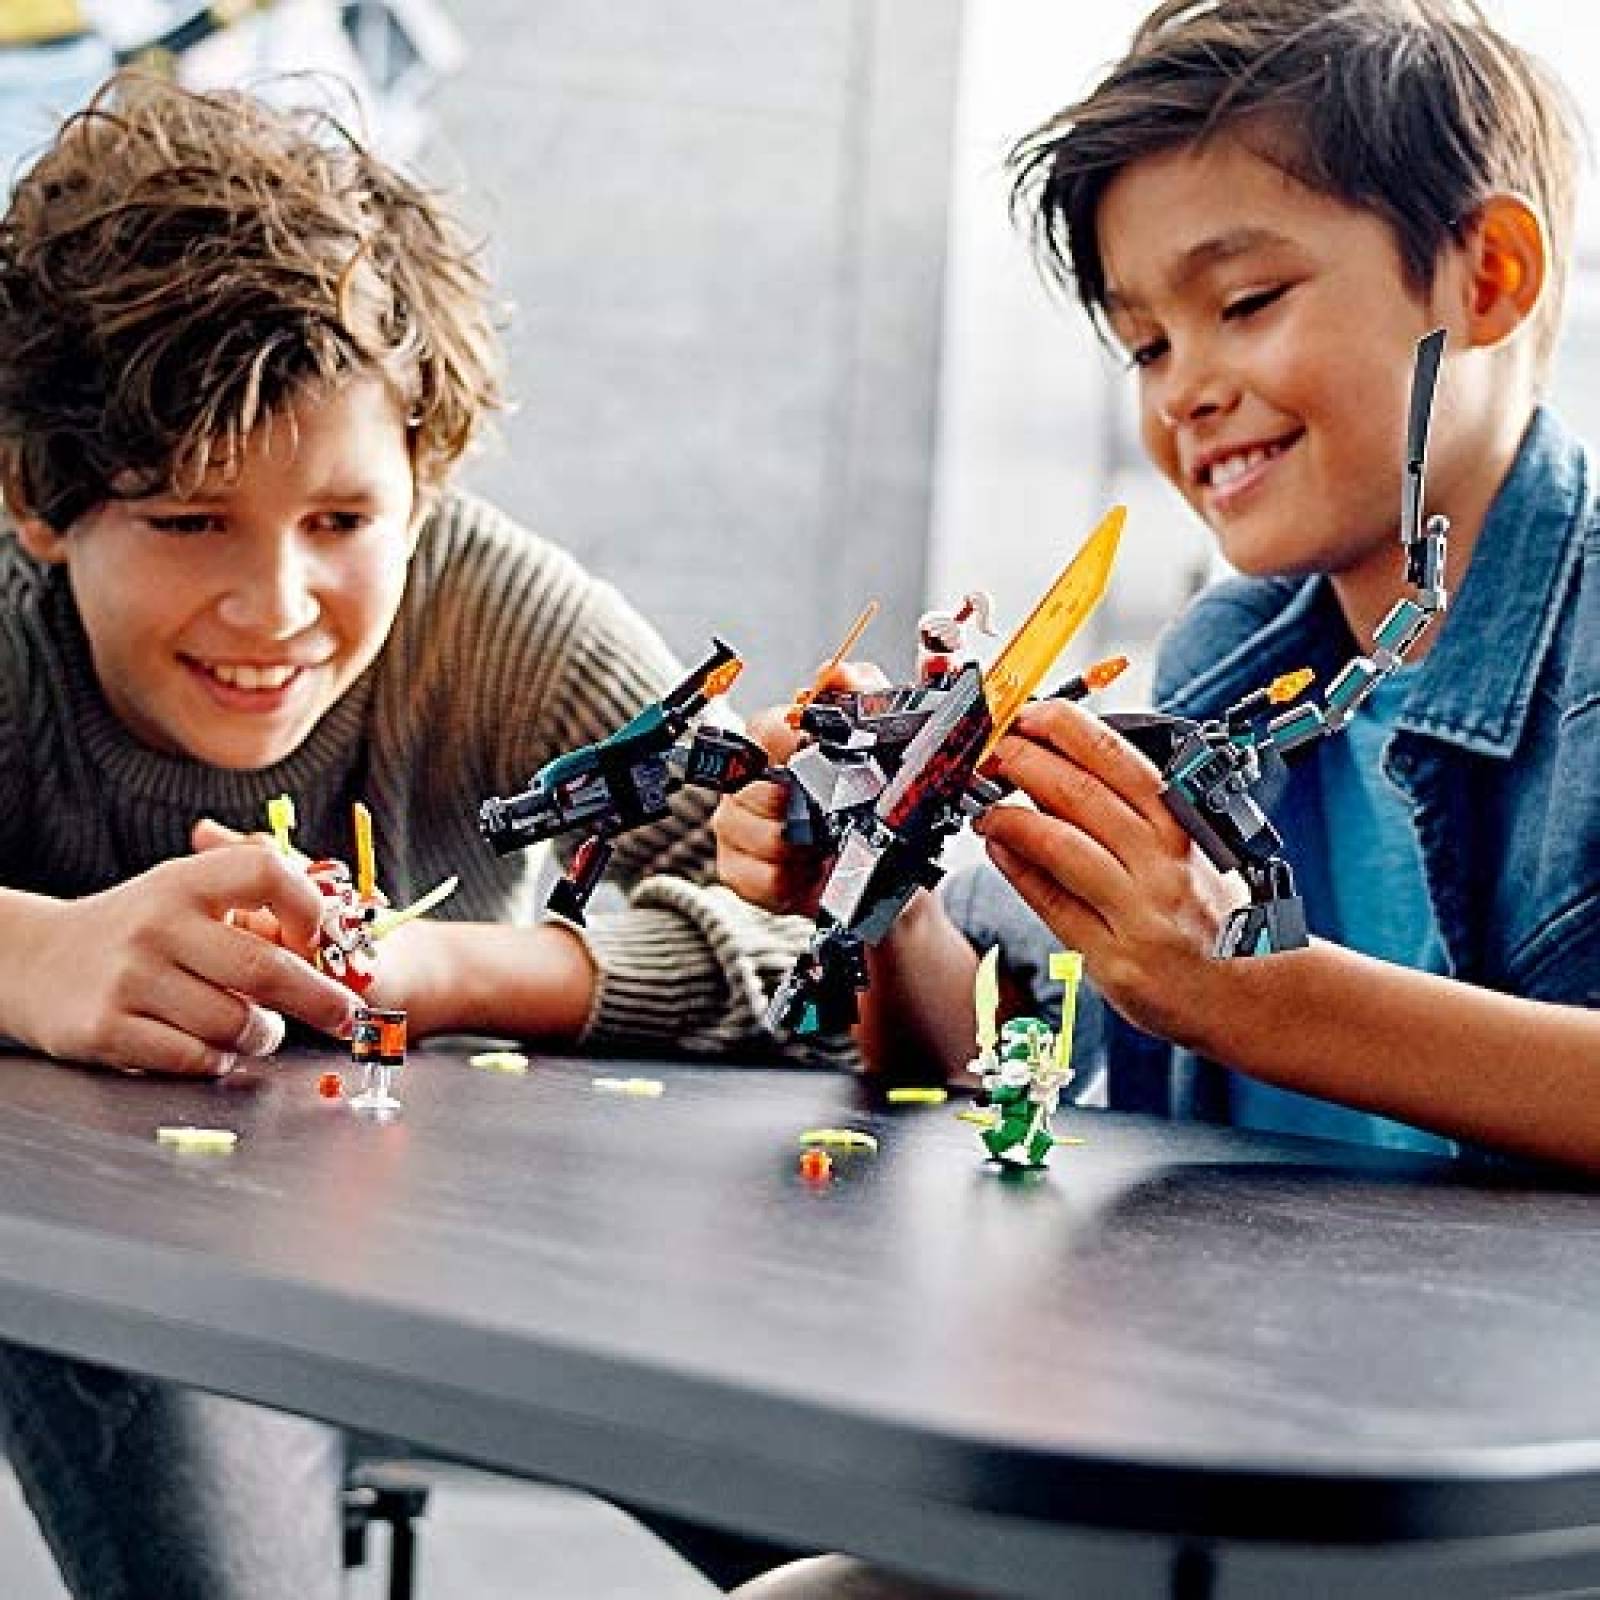 Juguete Armable LEGO NINJAGO 286 Piezas para Niños